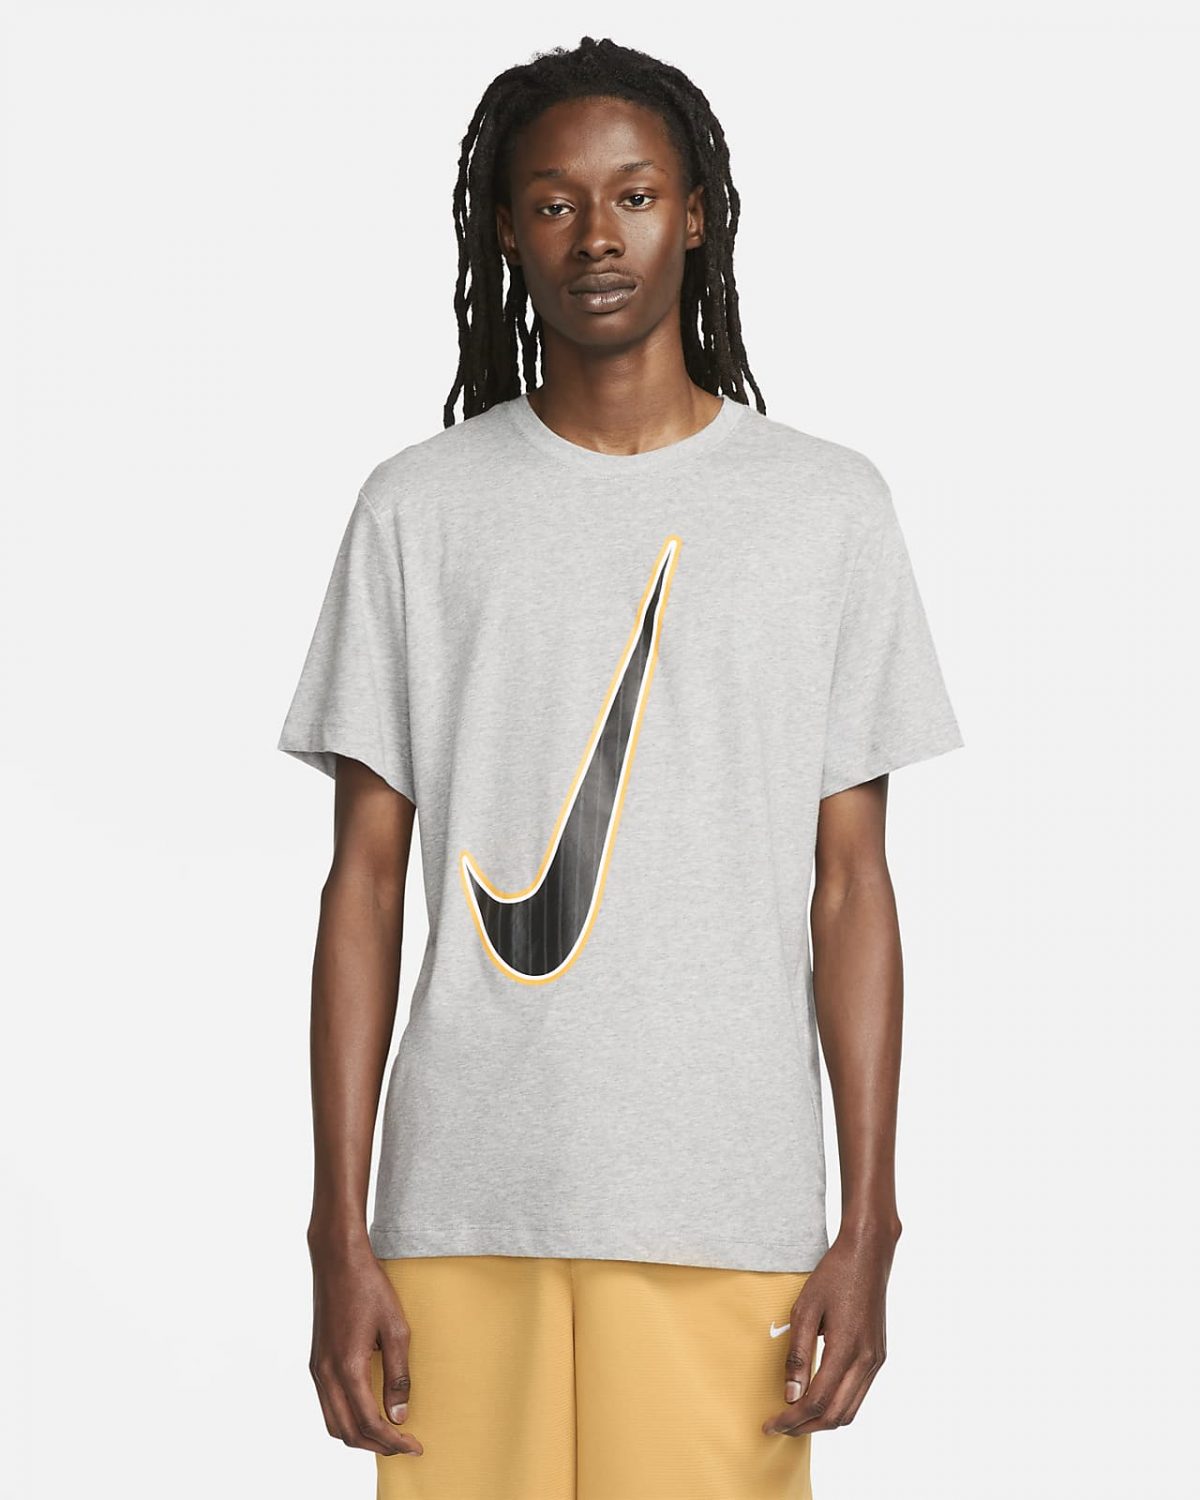 Мужская футболка Nike Dri-FIT серая фото